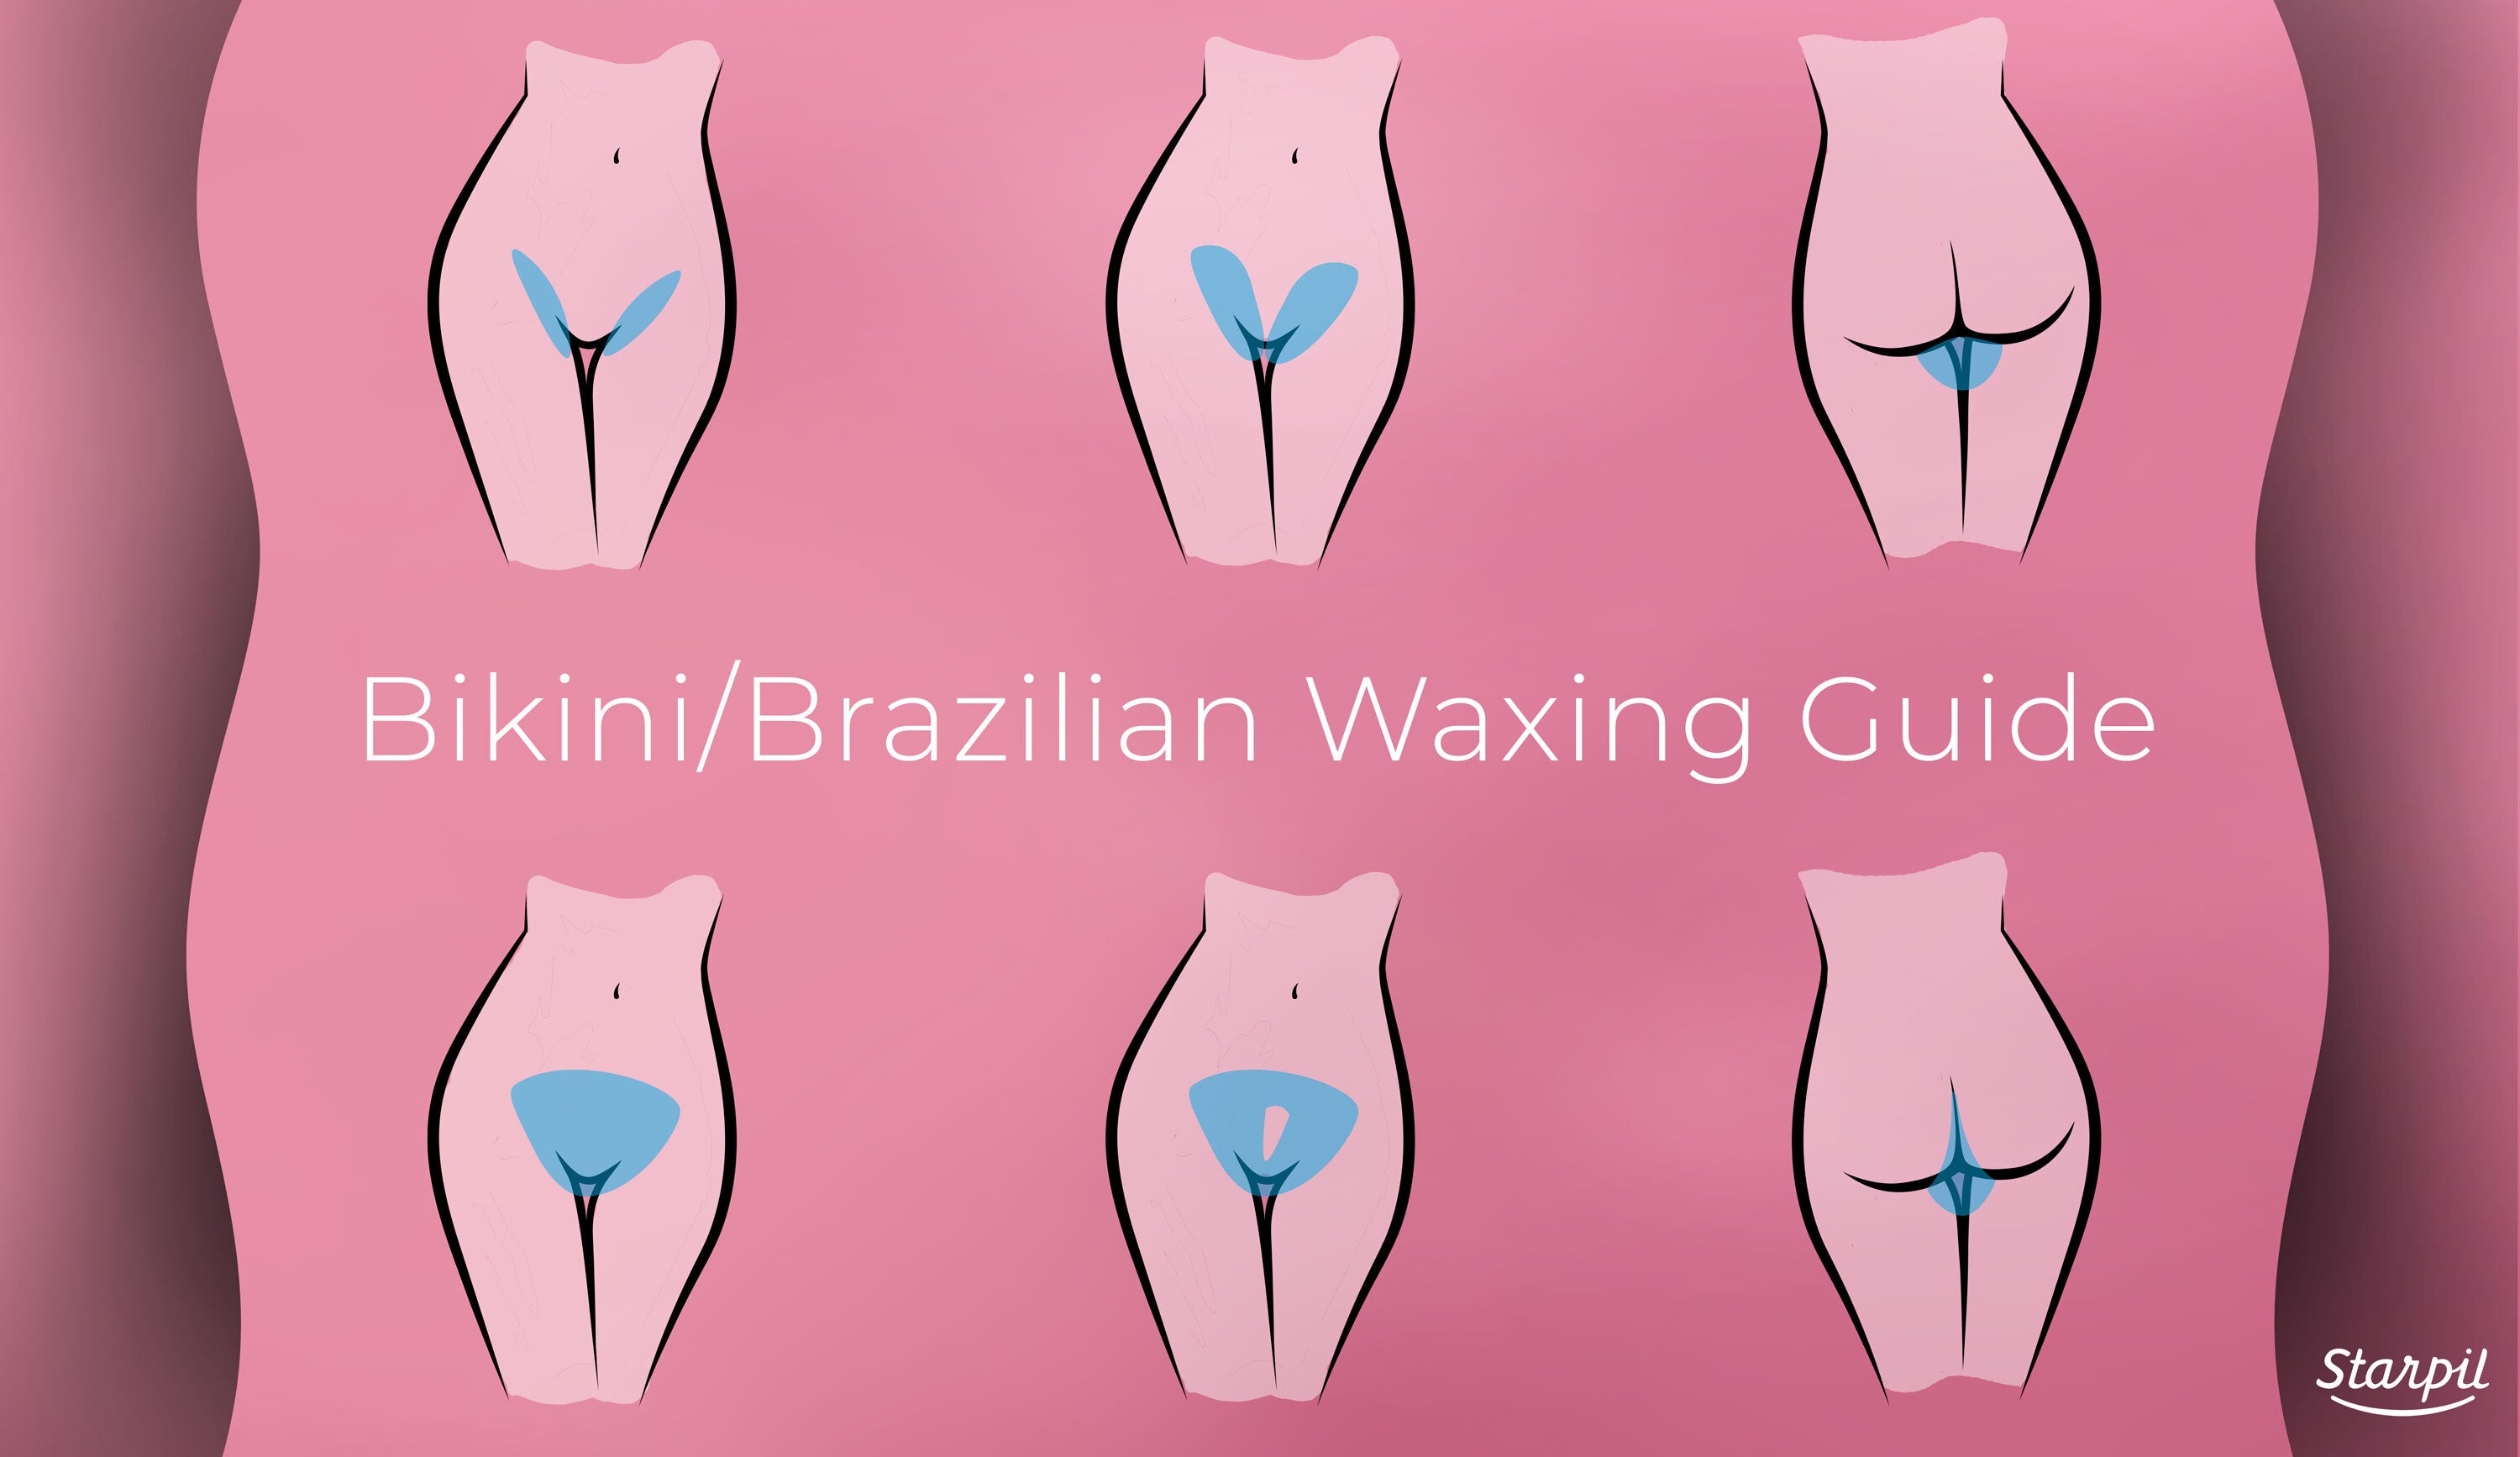 Brazilian Waxing